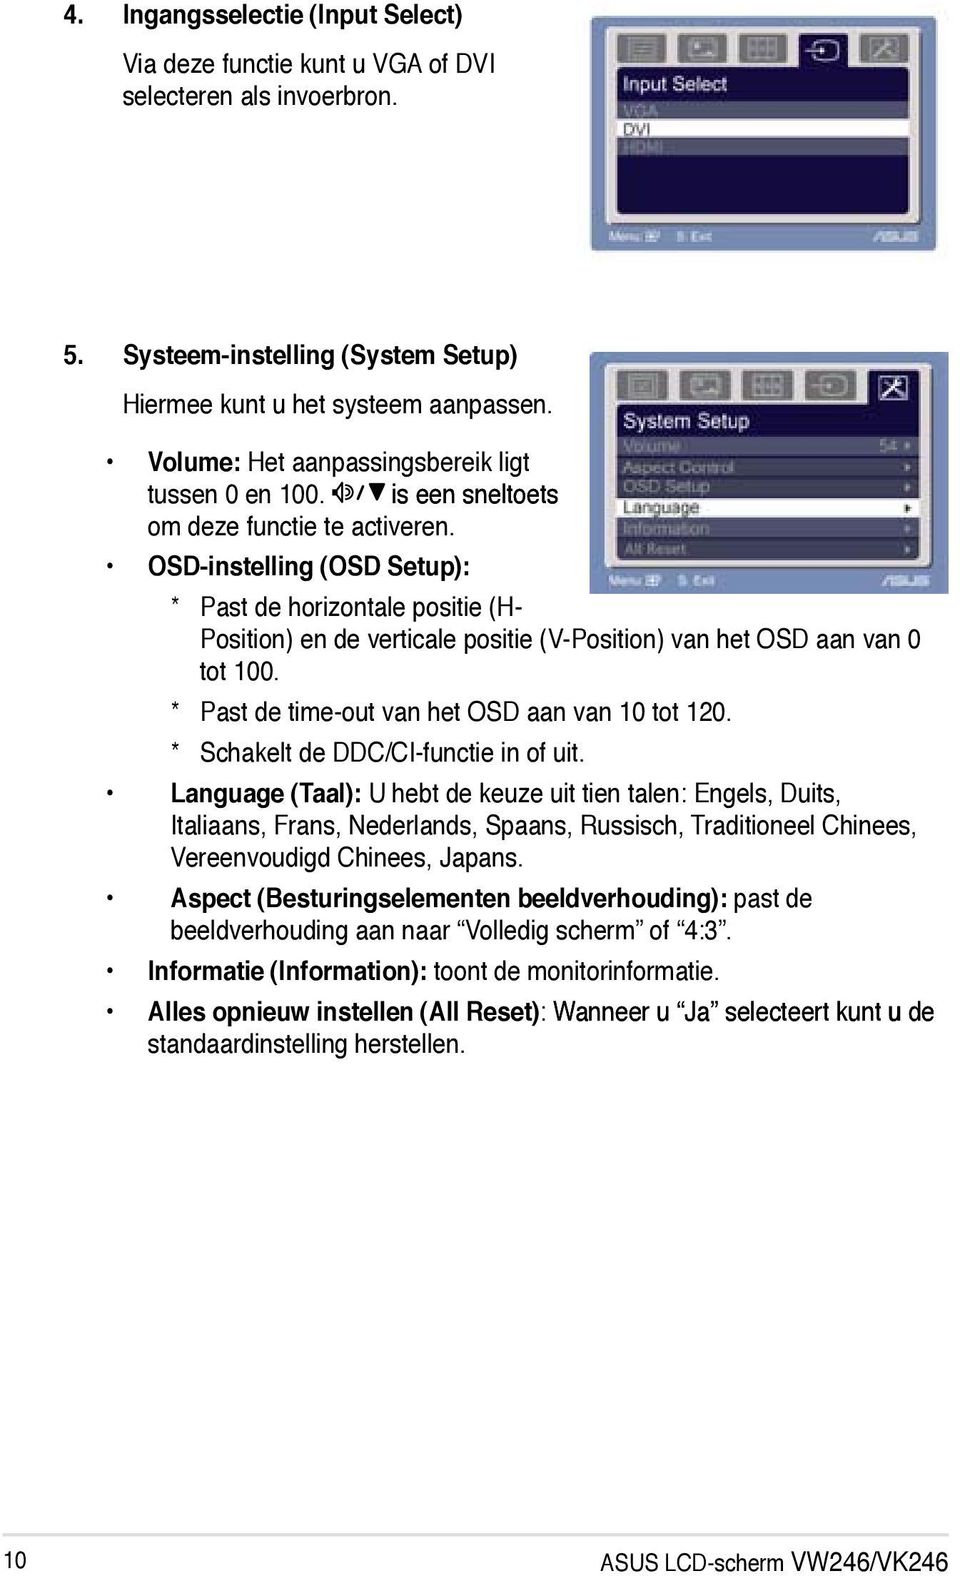 OSD-instelling (OSD Setup): * Past de horizontale positie (H- Position) en de verticale positie (V-Position) van het OSD aan van 0 tot 100. * Past de time-out van het OSD aan van 10 tot 120.